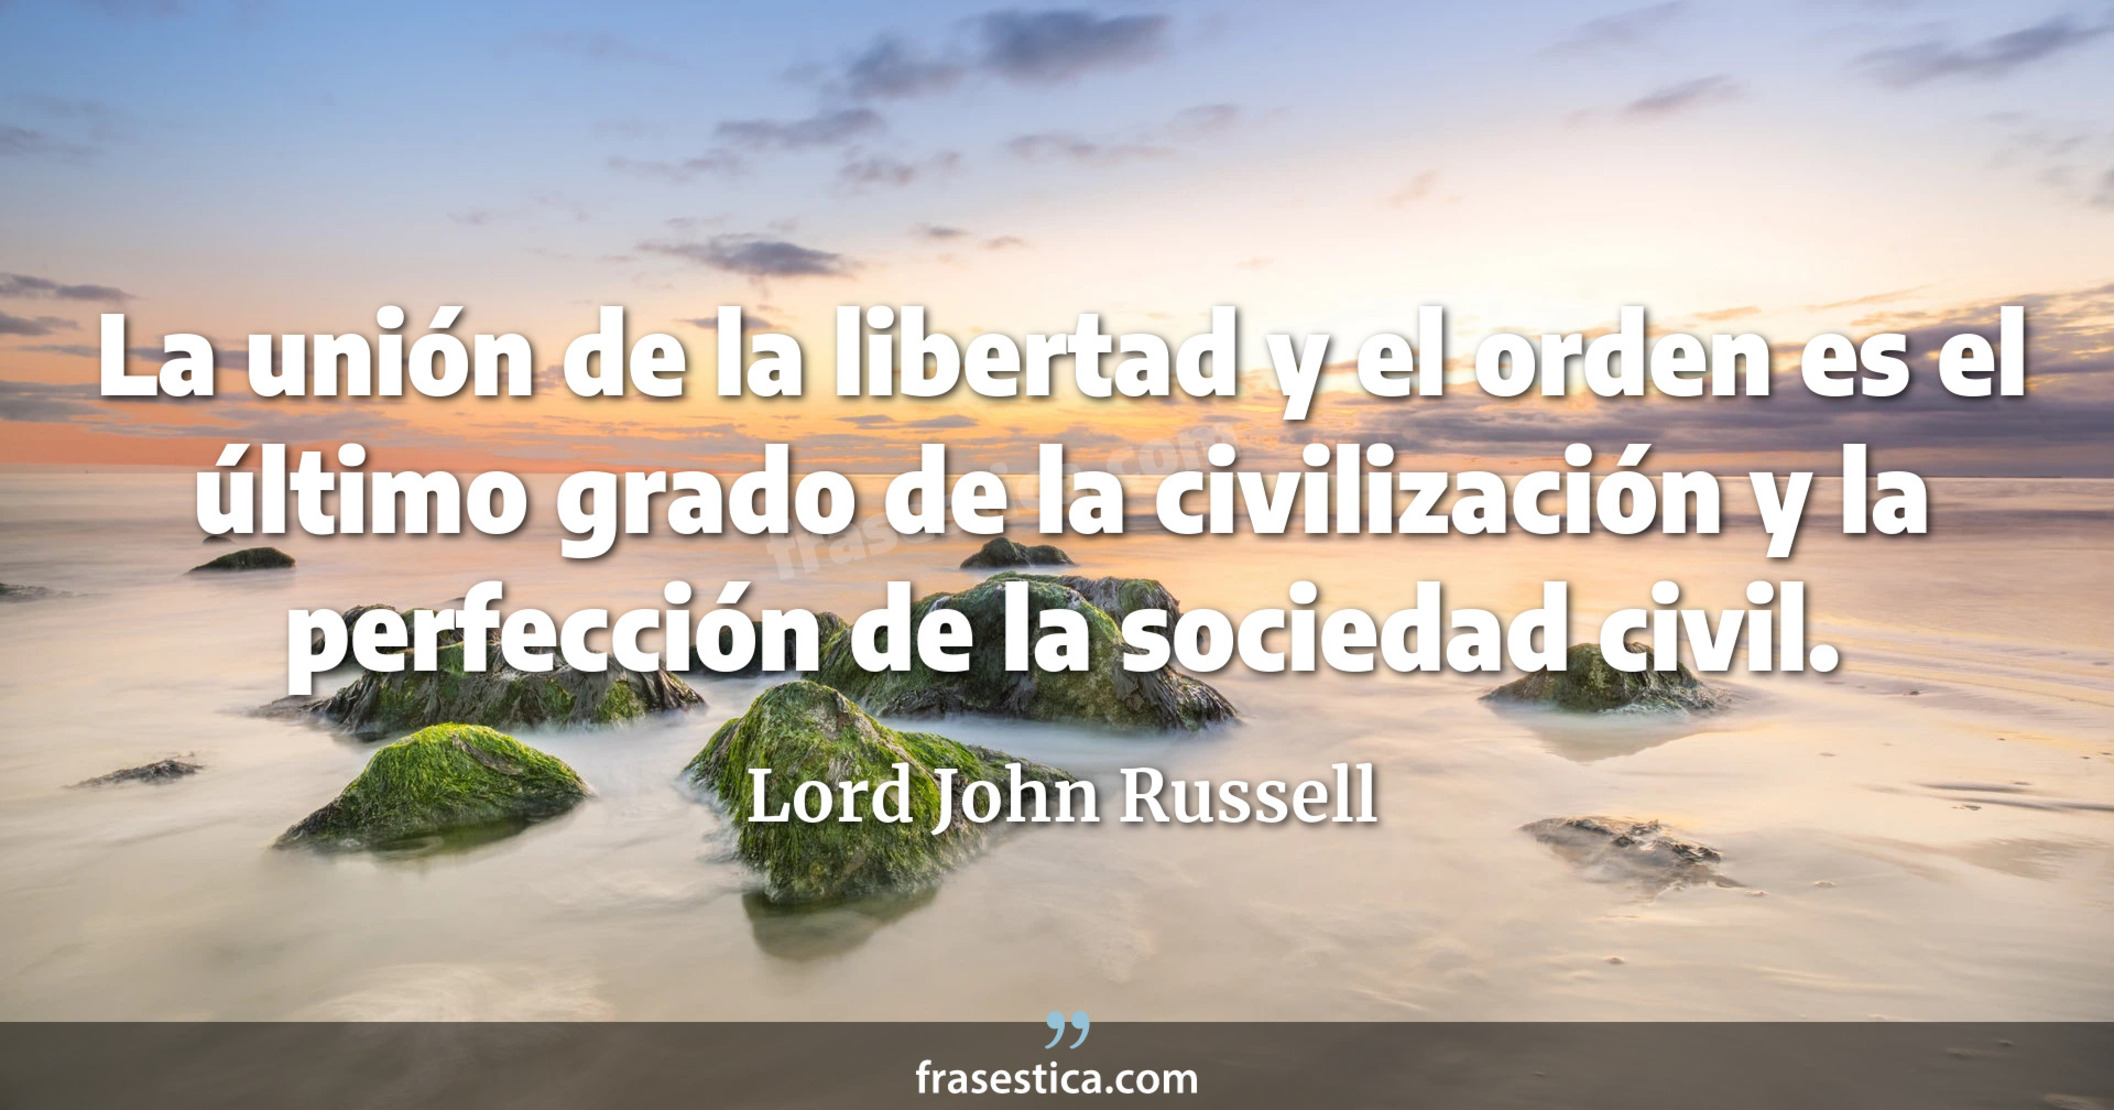 La unión de la libertad y el orden es el último grado de la civilización y la perfección de la sociedad civil. - Lord John Russell